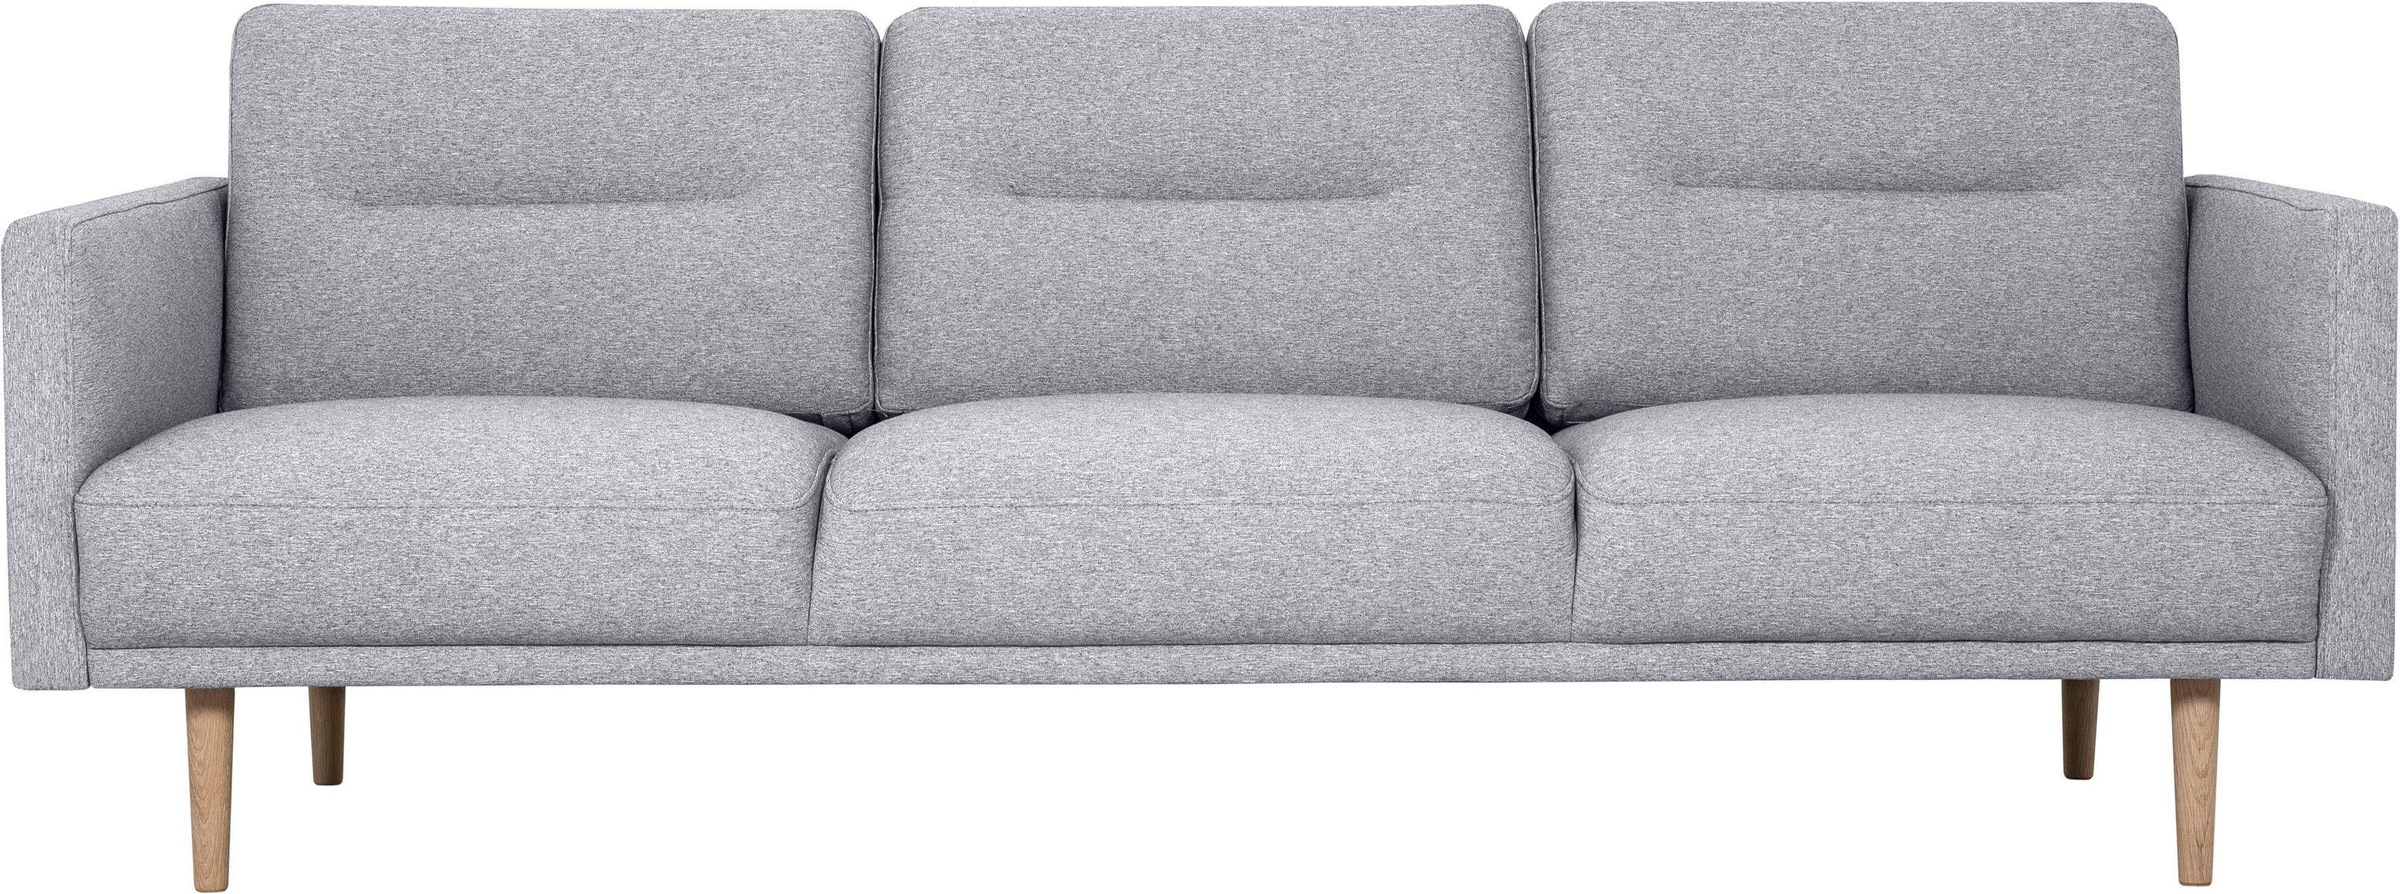 3-Sitzer »Brande«, in skandinavischem Design, verschiedene Farben verfügbar